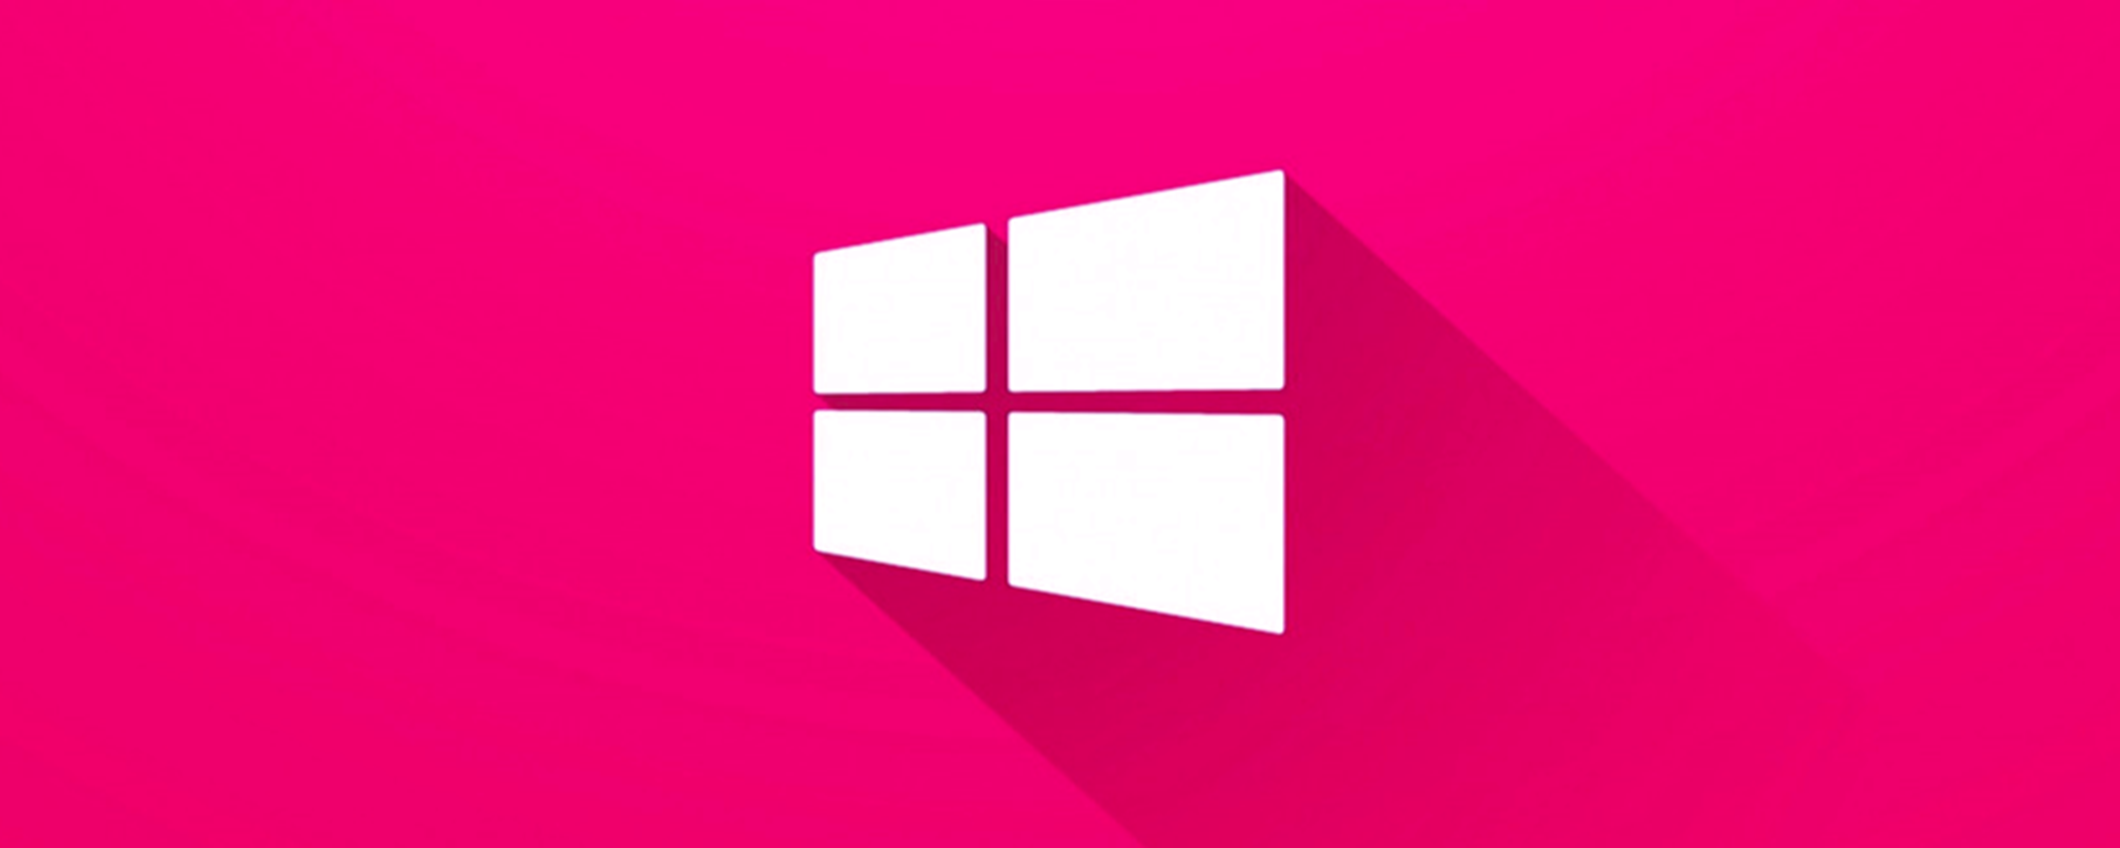 VIPKeySale, Windows 10 Pro scontato del 91% e upgrade gratuito a Windows 11